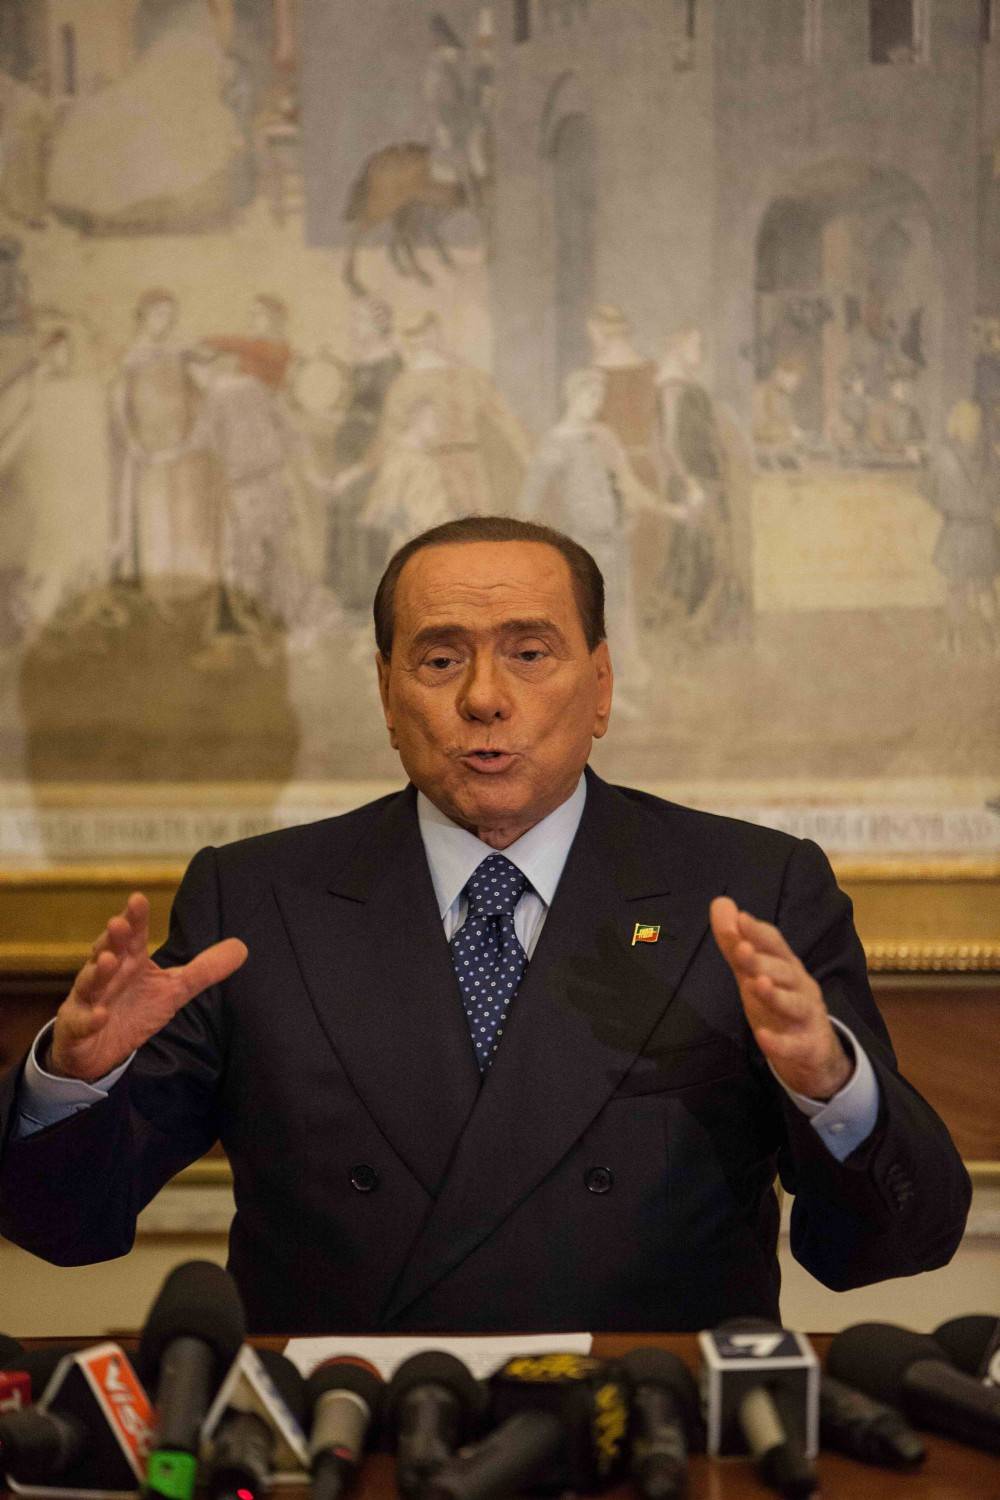 L'affondo di Berlusconi: "Conte si dimetta a prescindere dal voto"